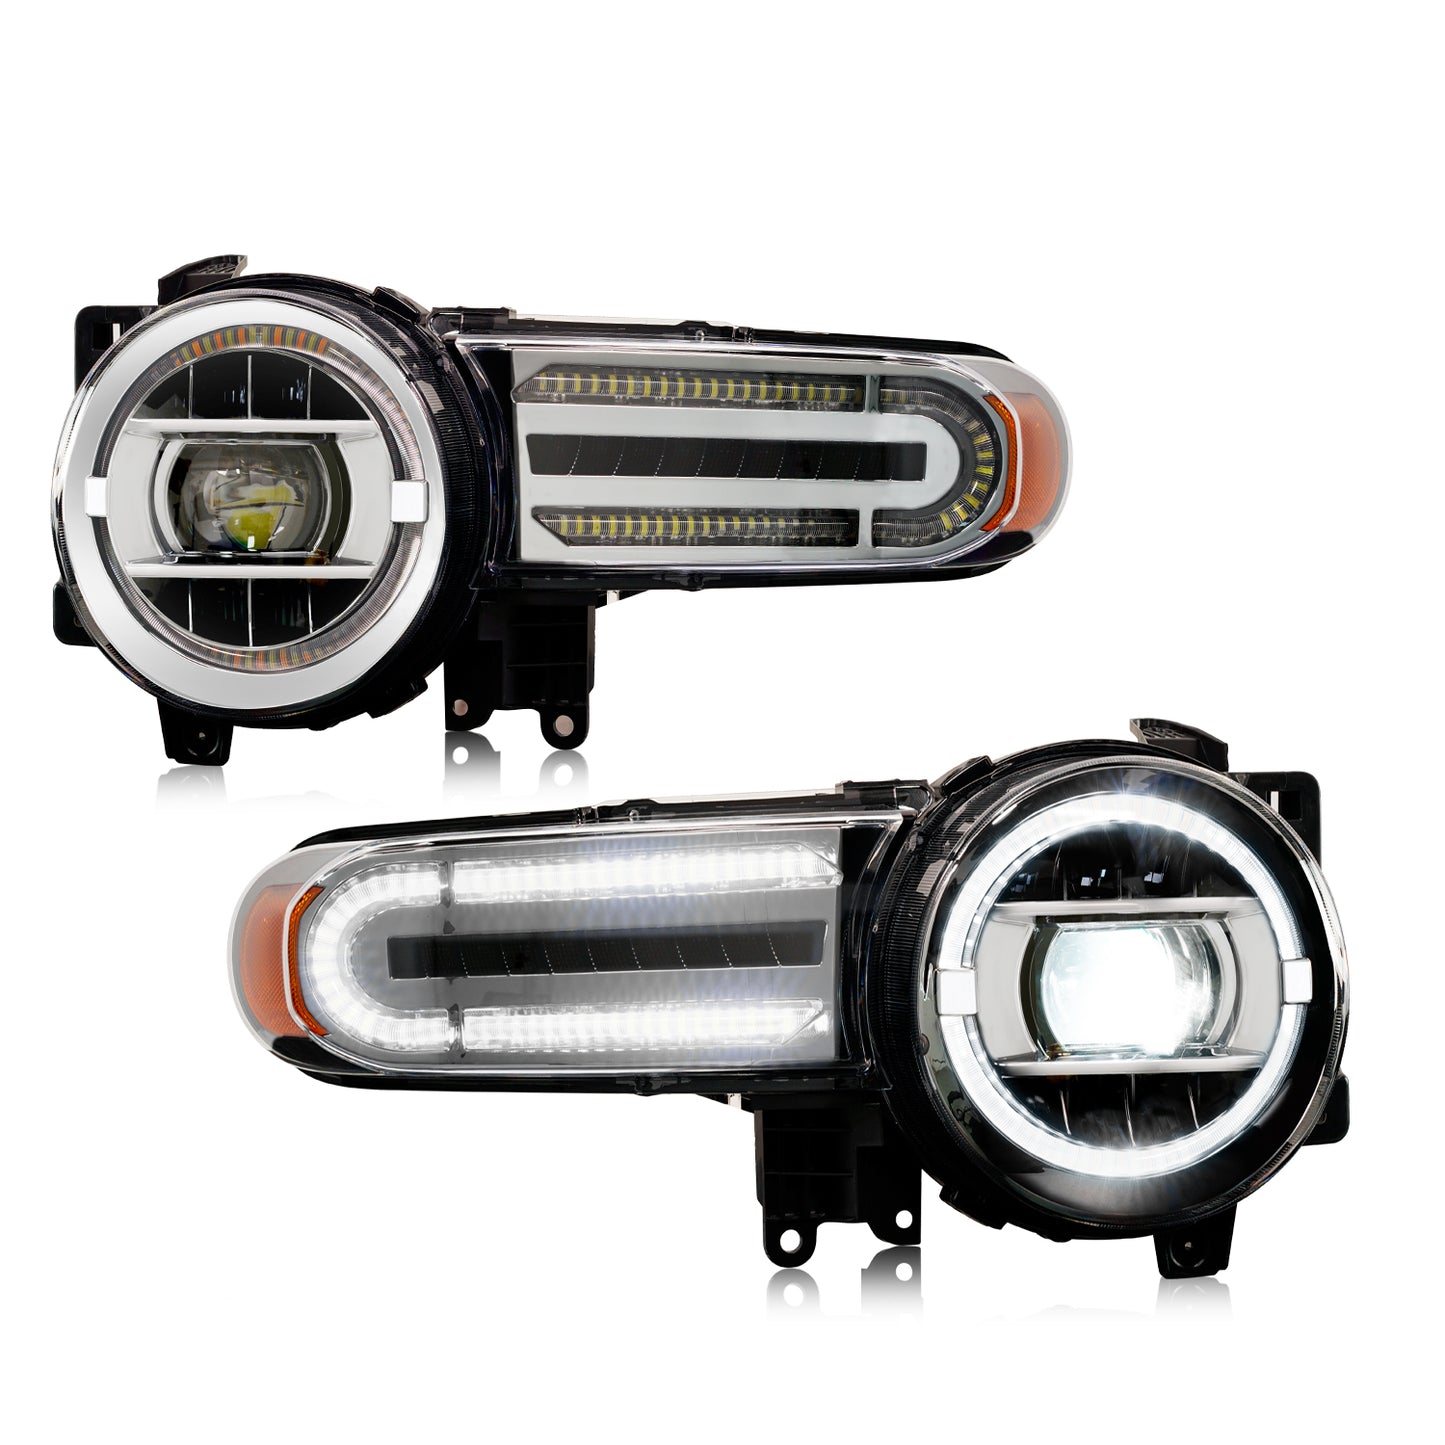 Full LED Headlights Assembly For Toyota FJ Cruiser 2007-2021